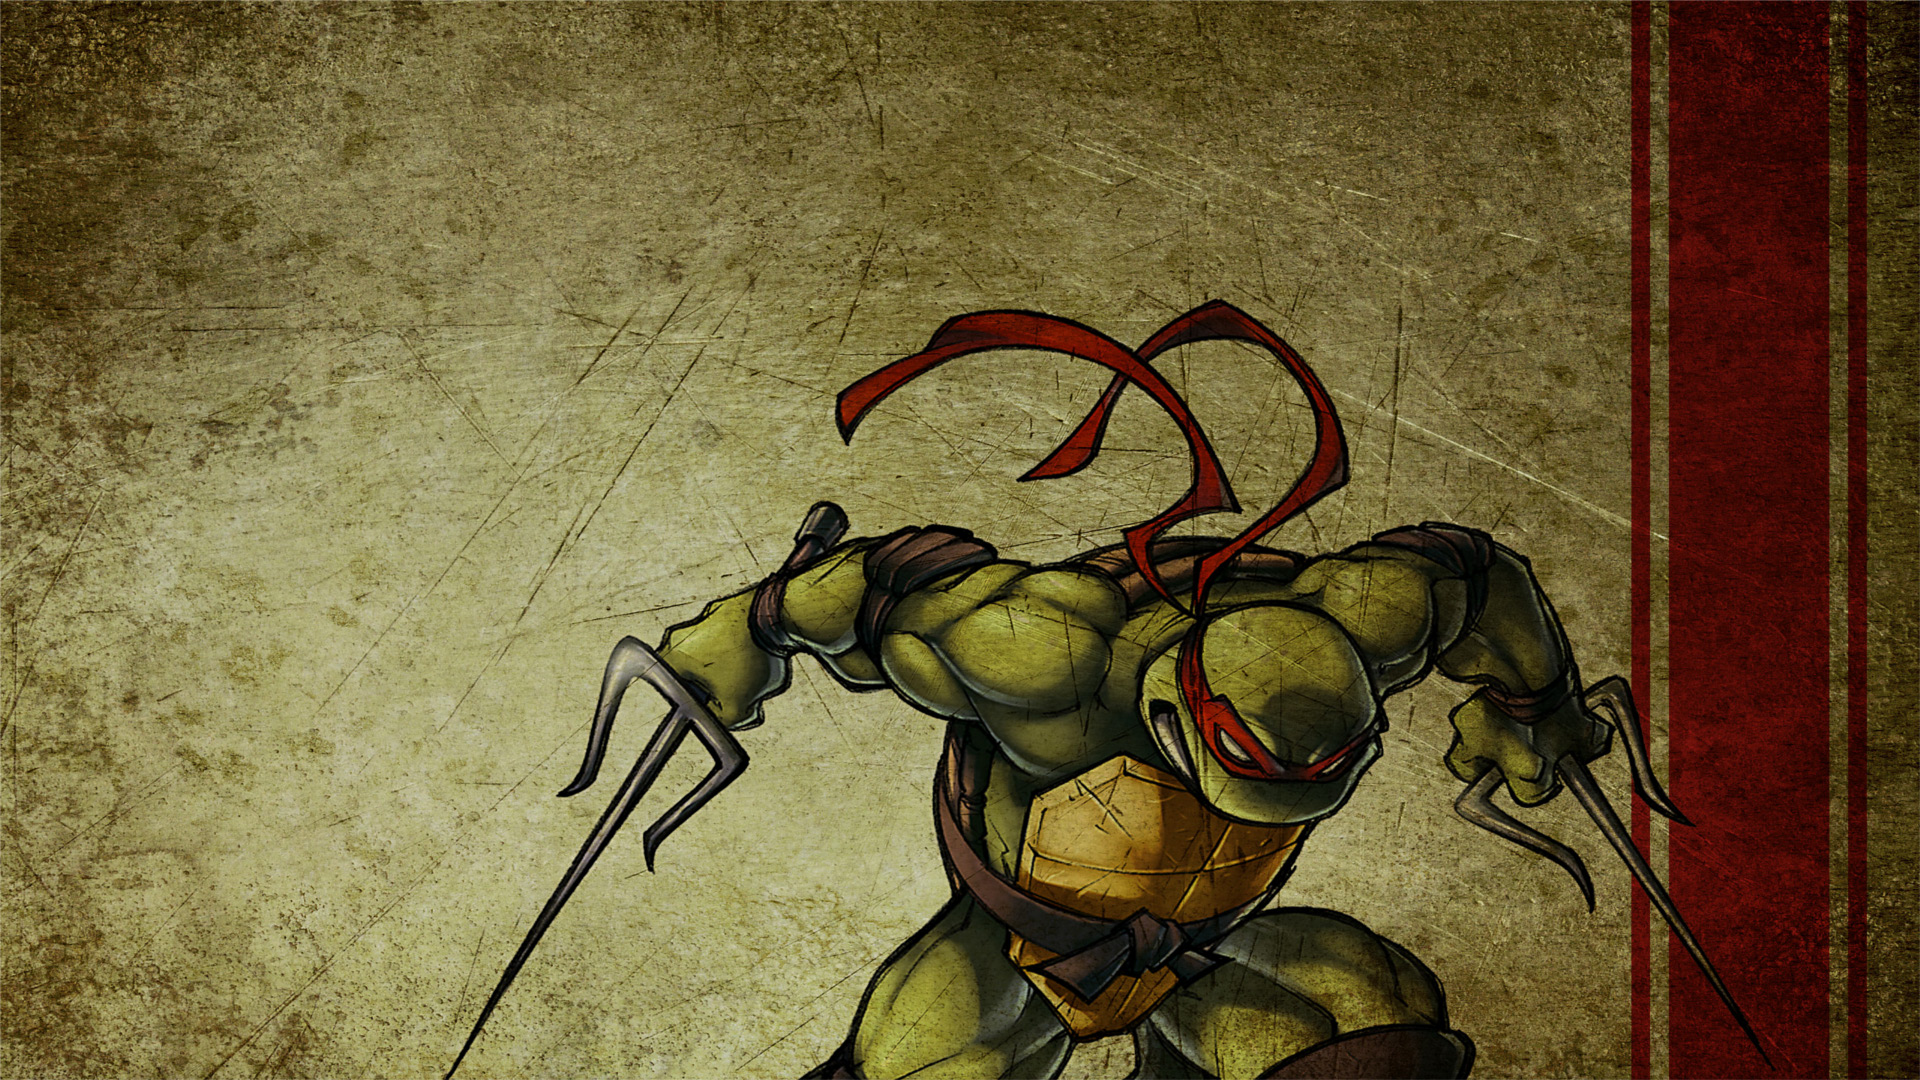 Tmnt wallpaper, Teenage mutant ninja turtles artwork, Tmnt